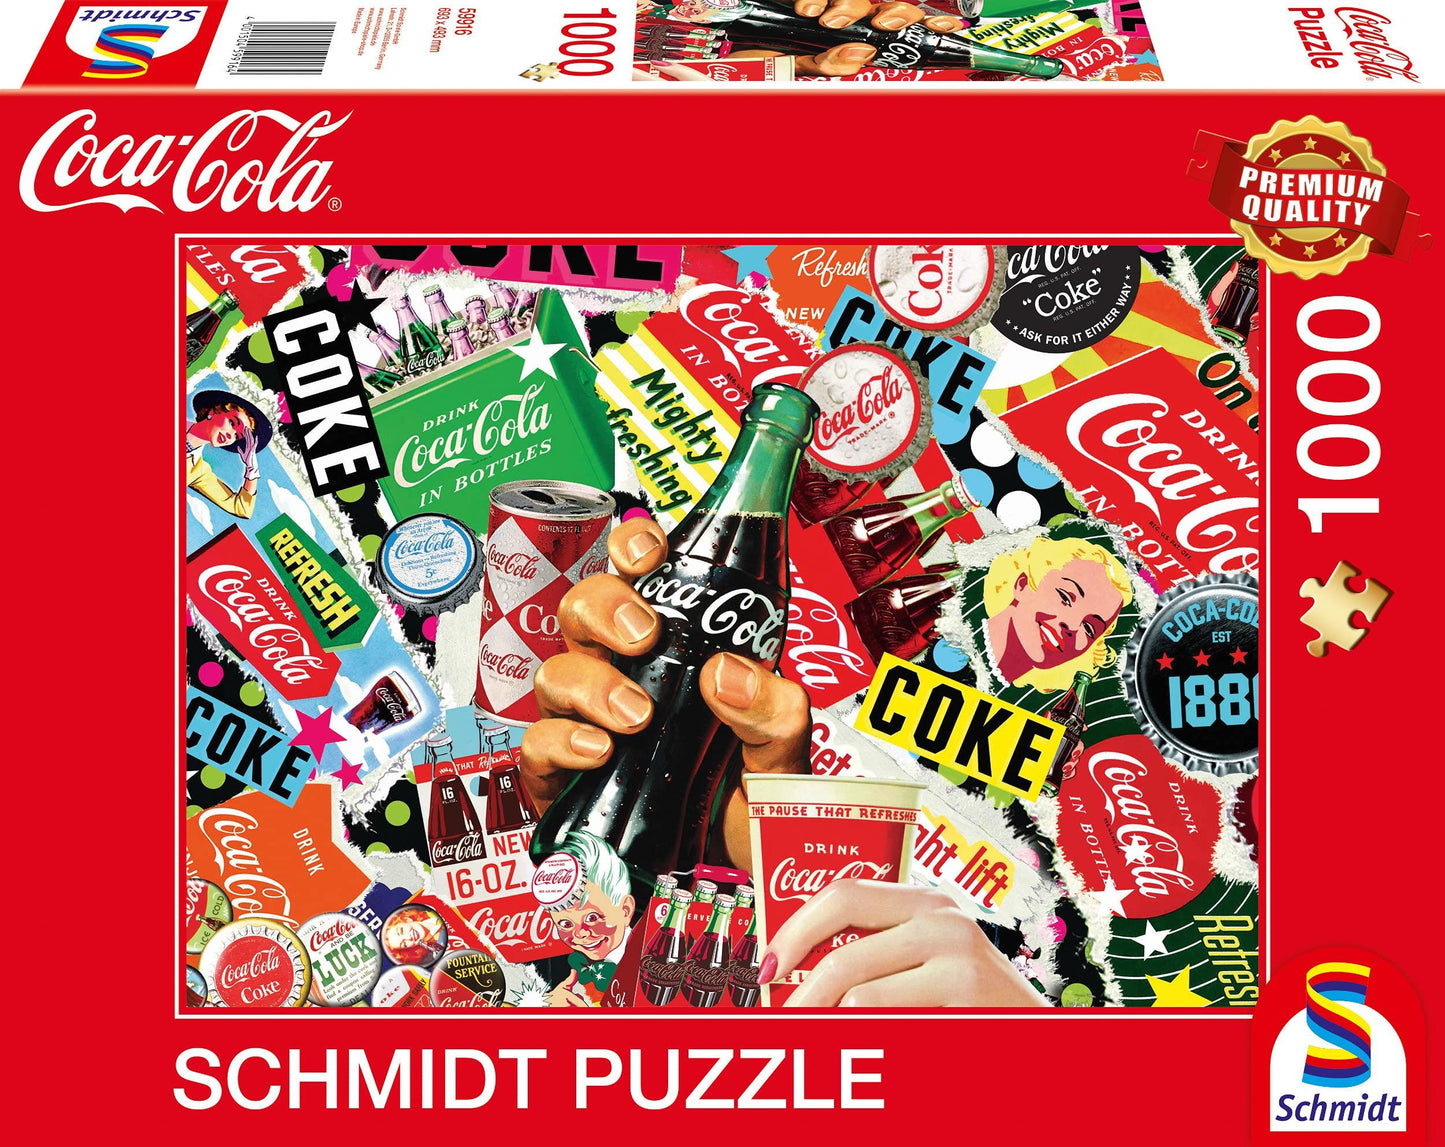 Schmidt - Coca Cola Montage - 1000 Piece Jigsaw Puzzle